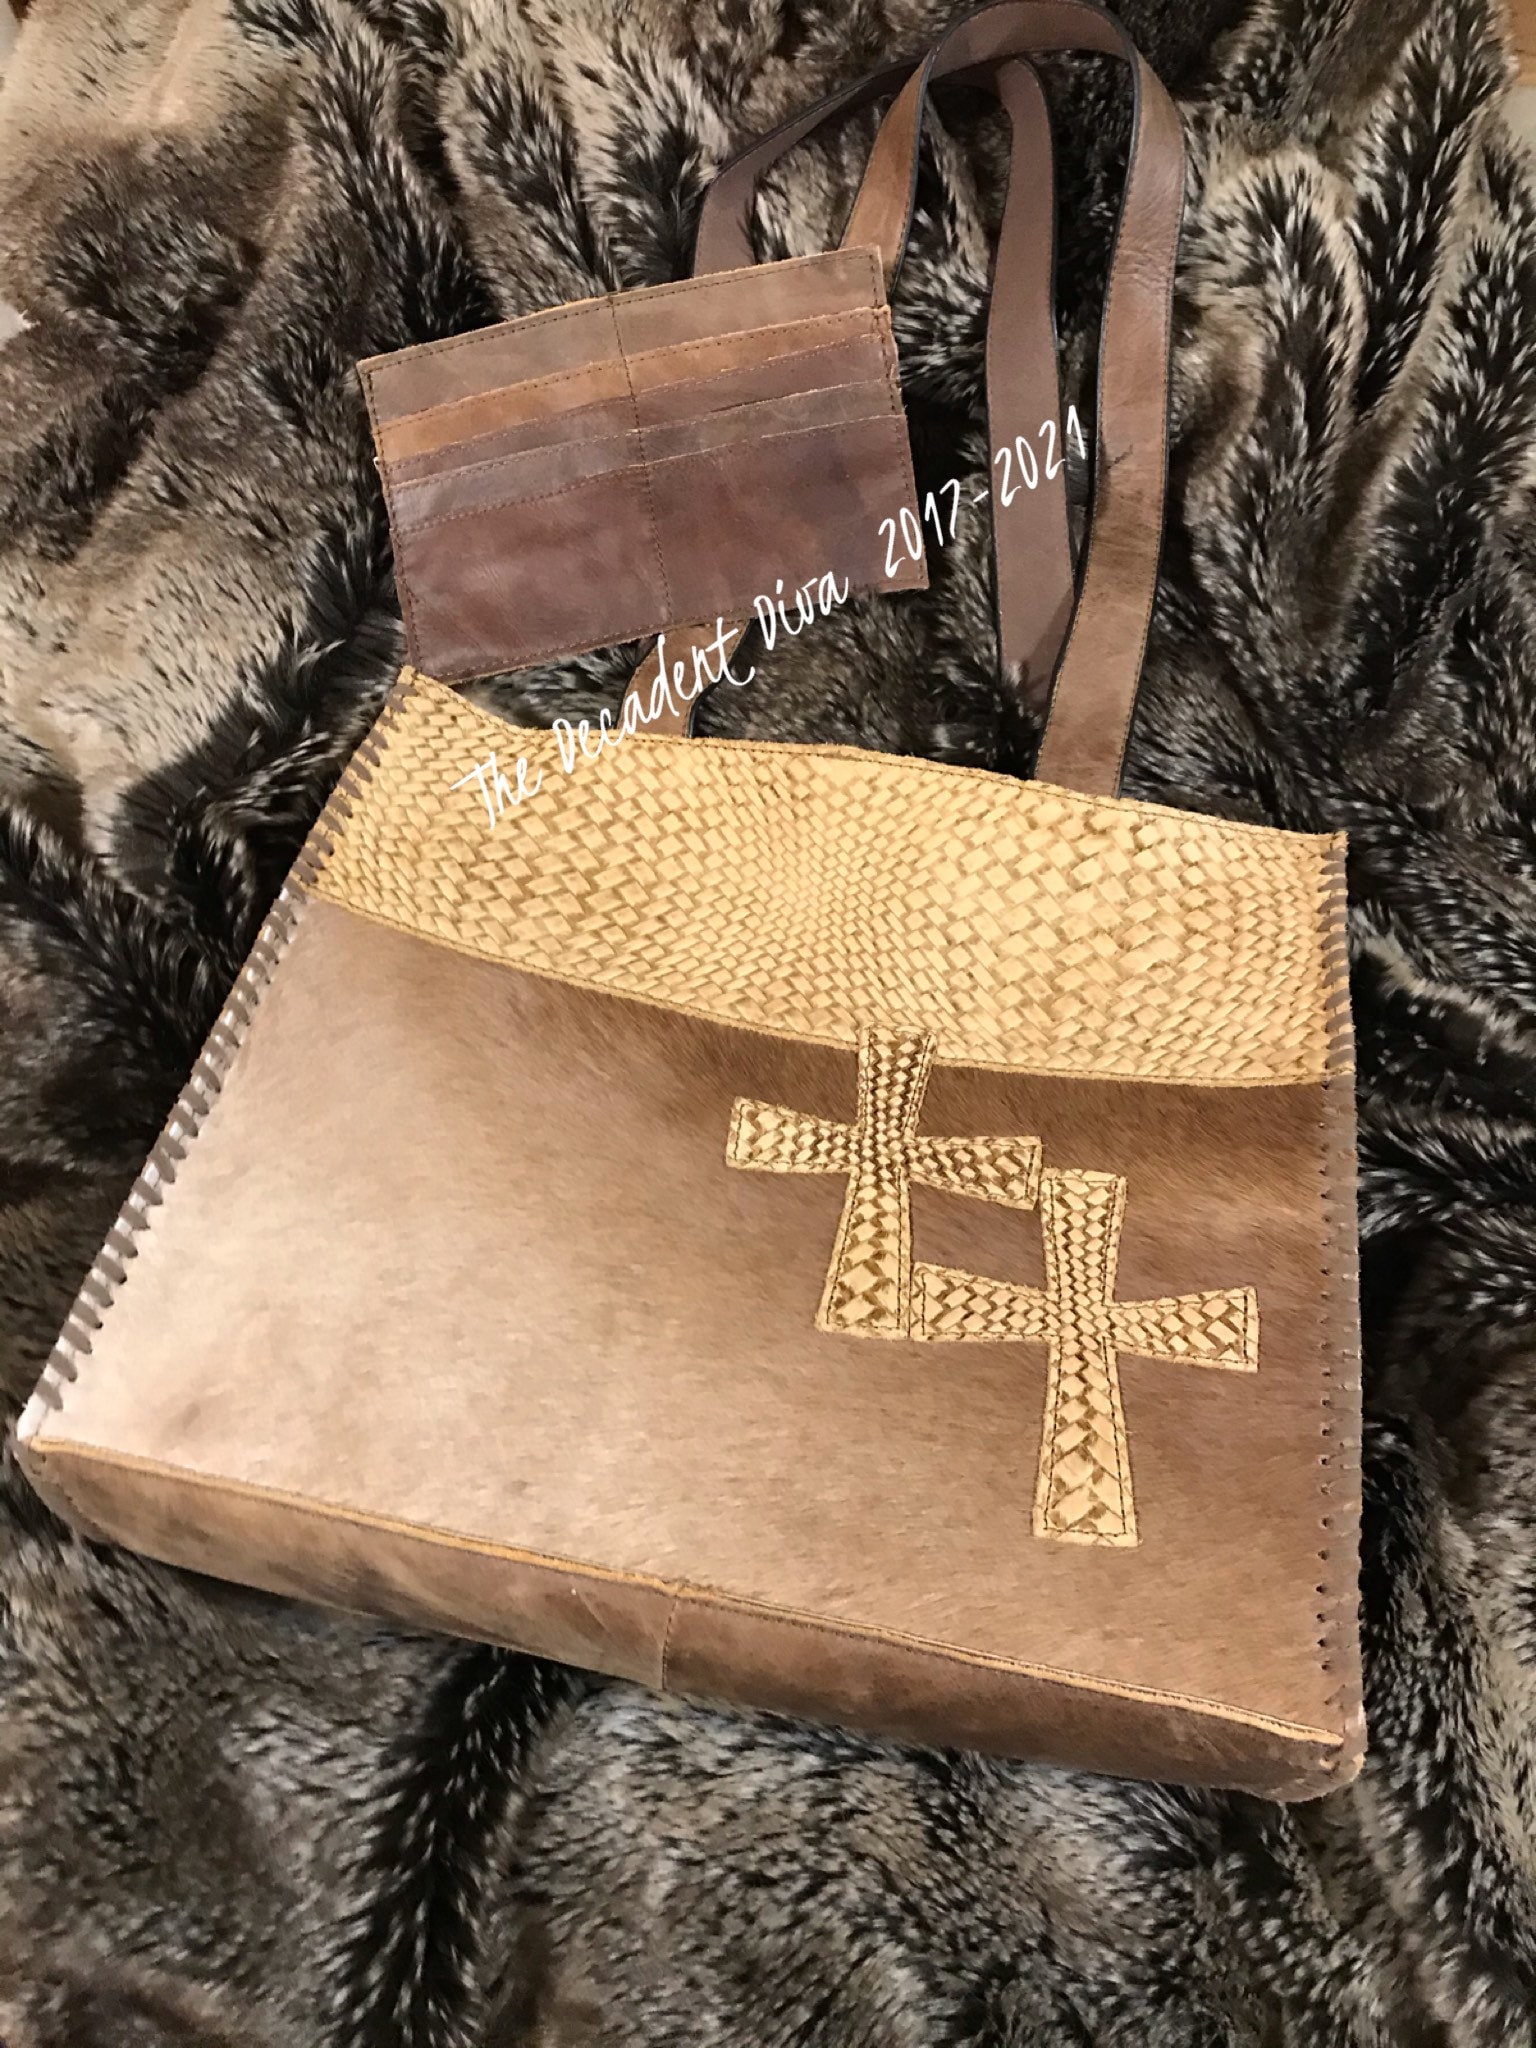 Heim-Made Woven Buckskin Leather Purse - Women's